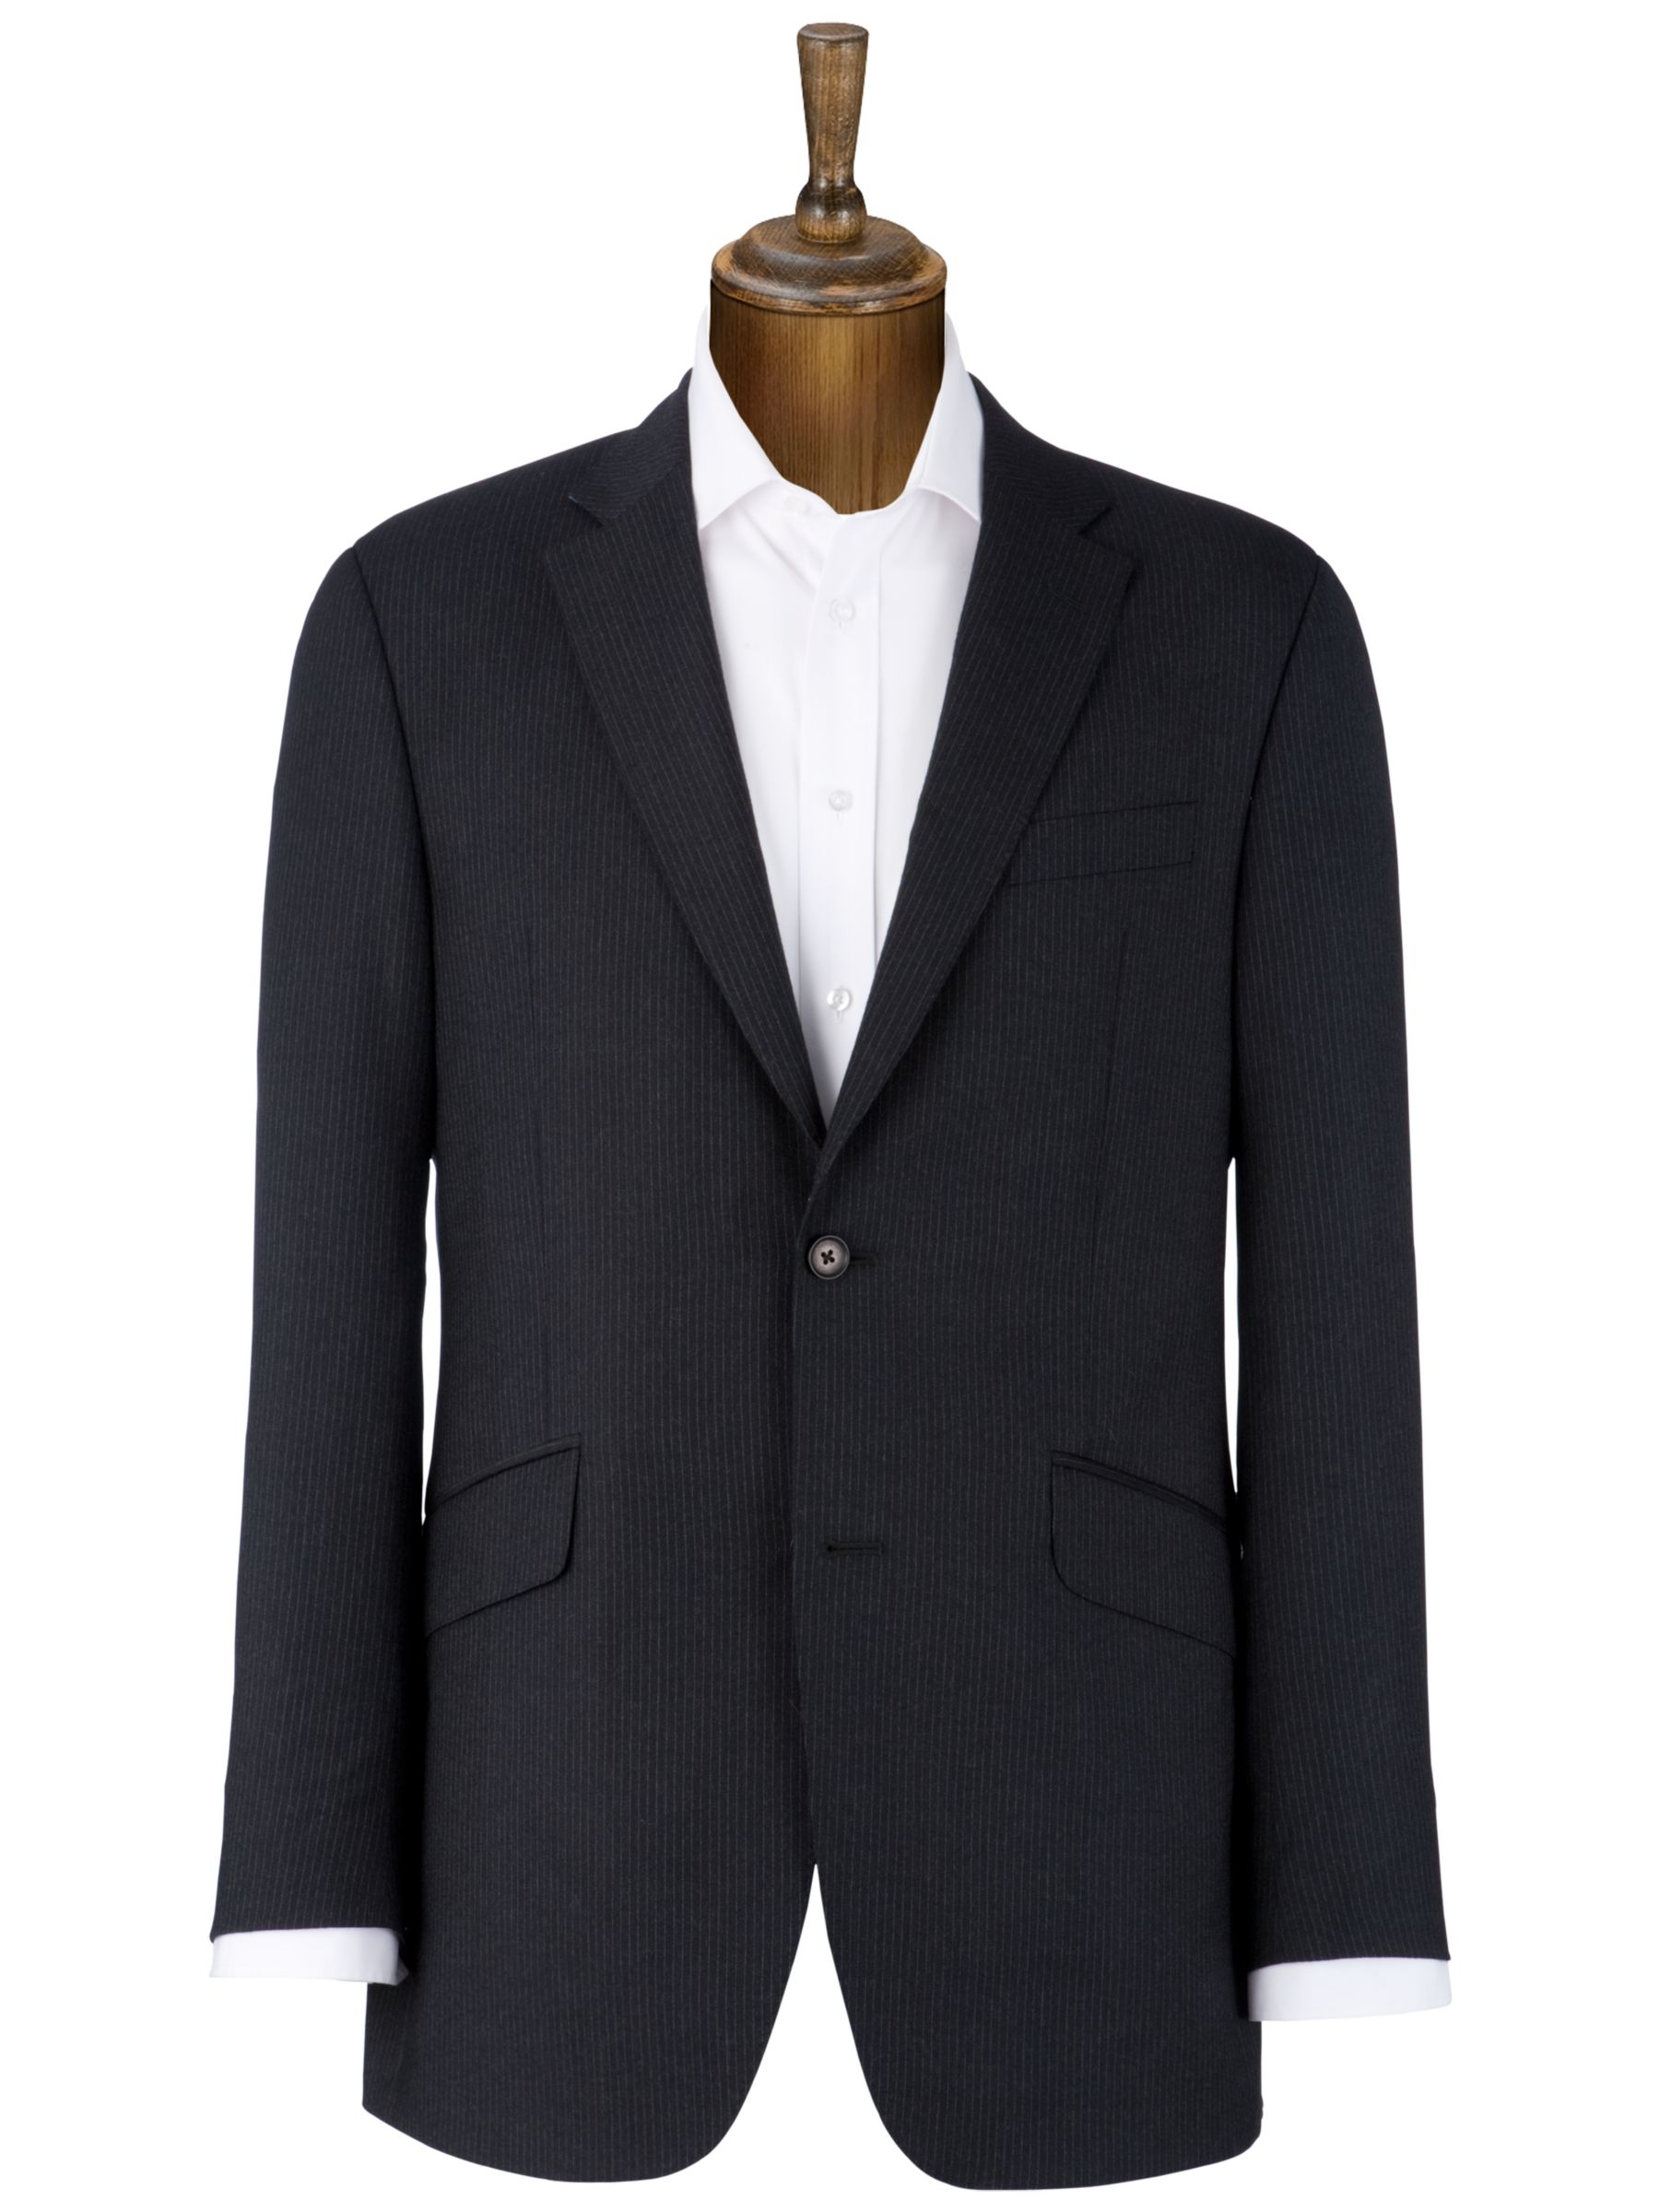 Charlie Allen for John Lewis Fine Stripe Suit Jacket, Charcoal at John Lewis